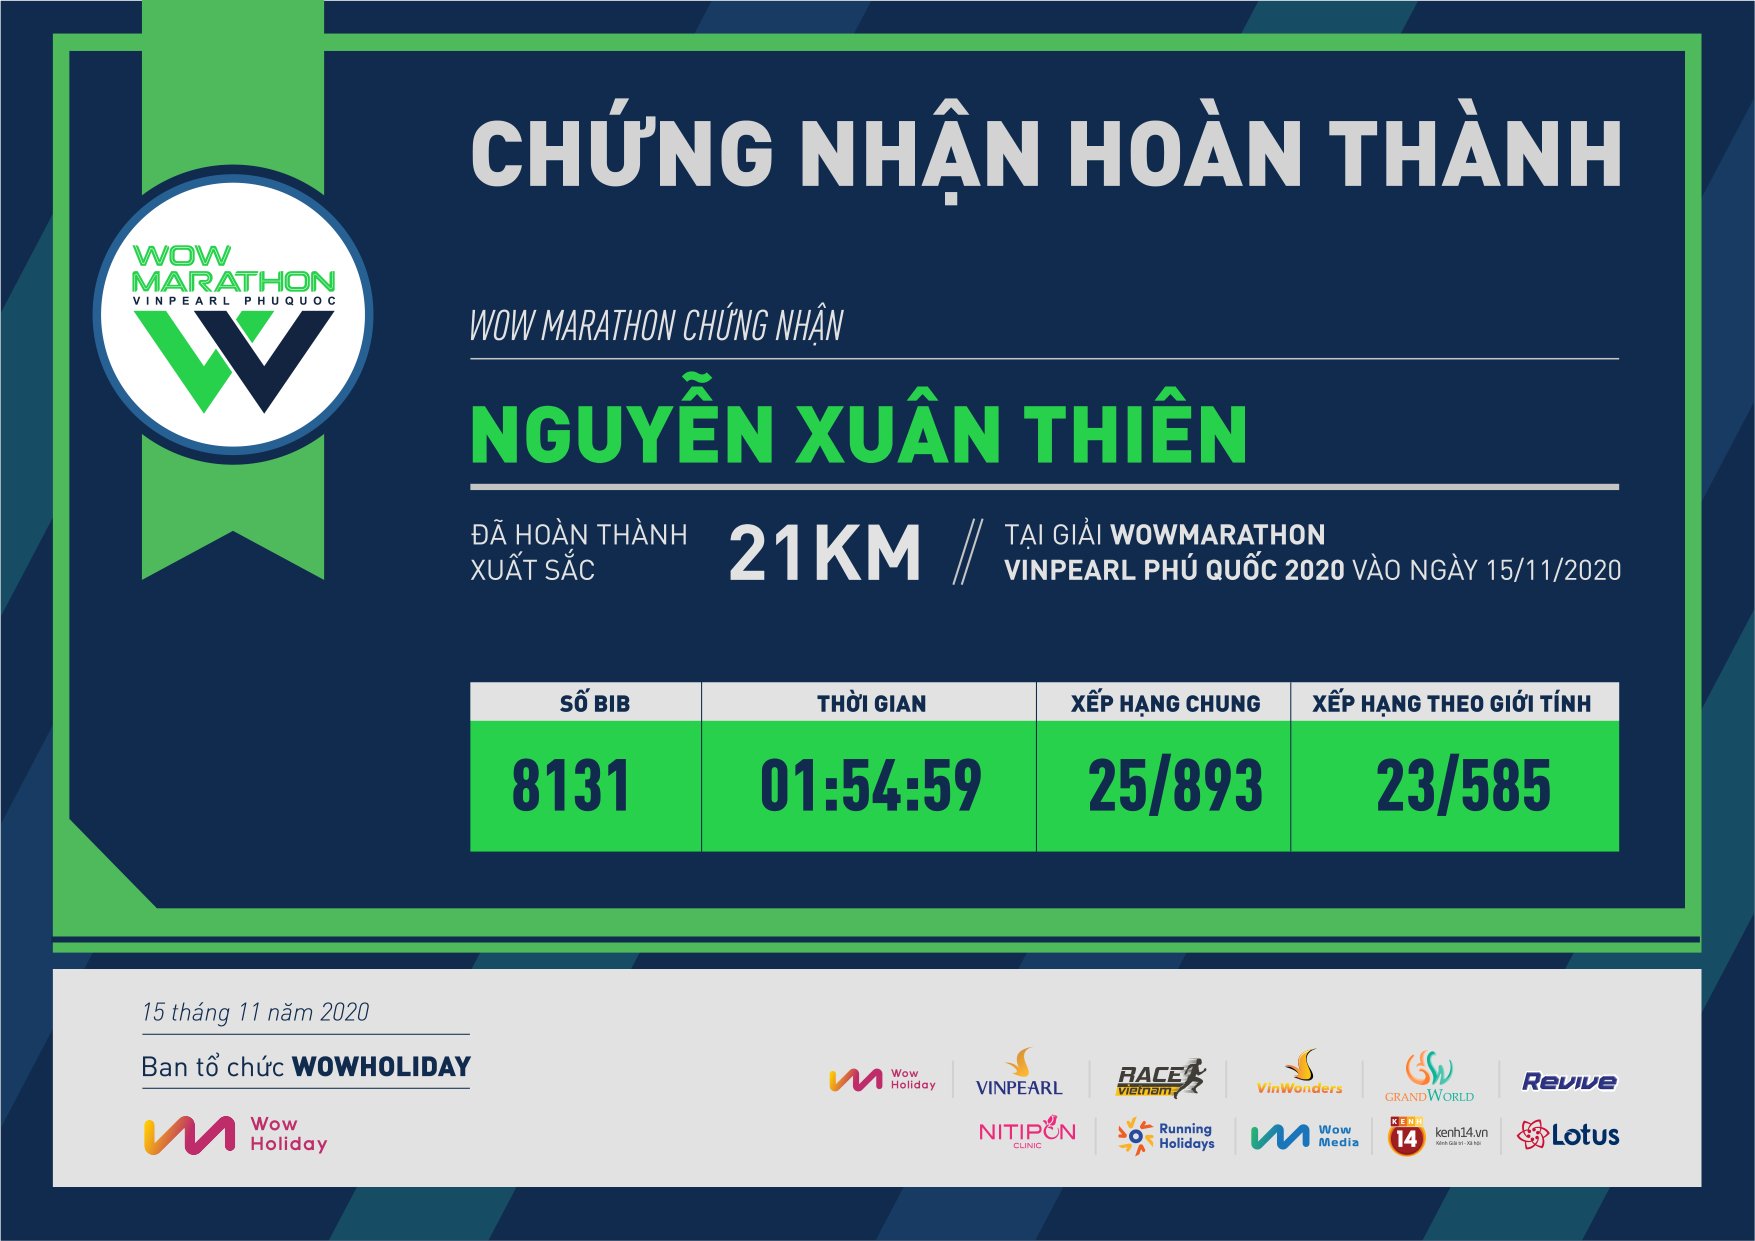 8131 - Nguyễn Xuân Thiên